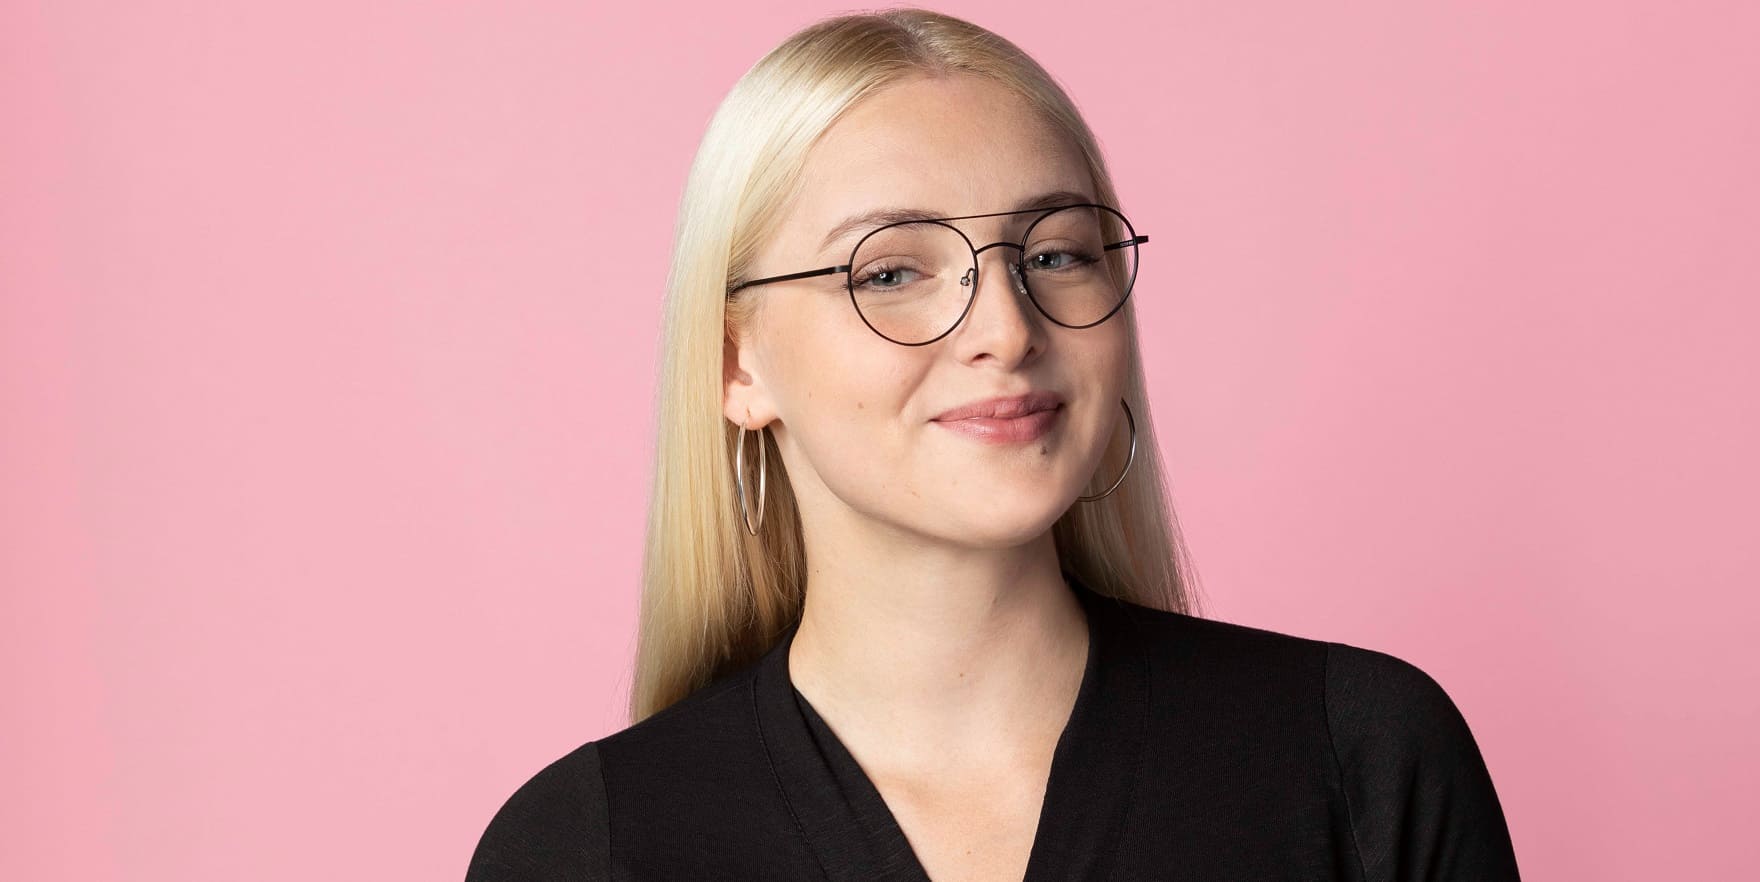 Damenbrille von Optiker Gronde bringt junge hübsche Blondine zum Lächeln